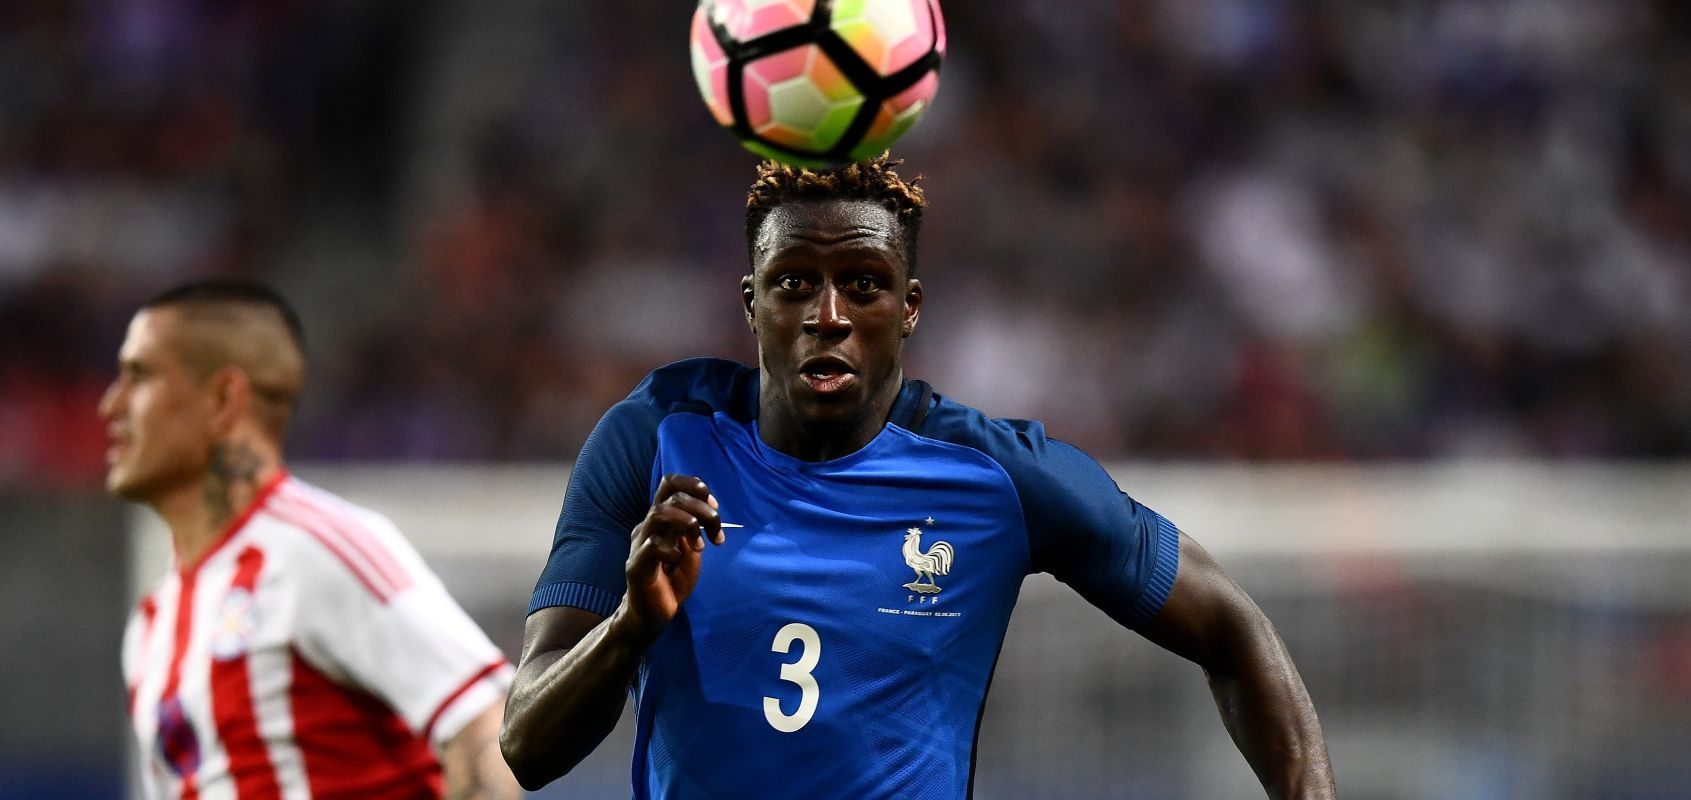 Potret Pemain Pemain Prancis Rasa Afrika Yang Tampil Di Piala Dunia